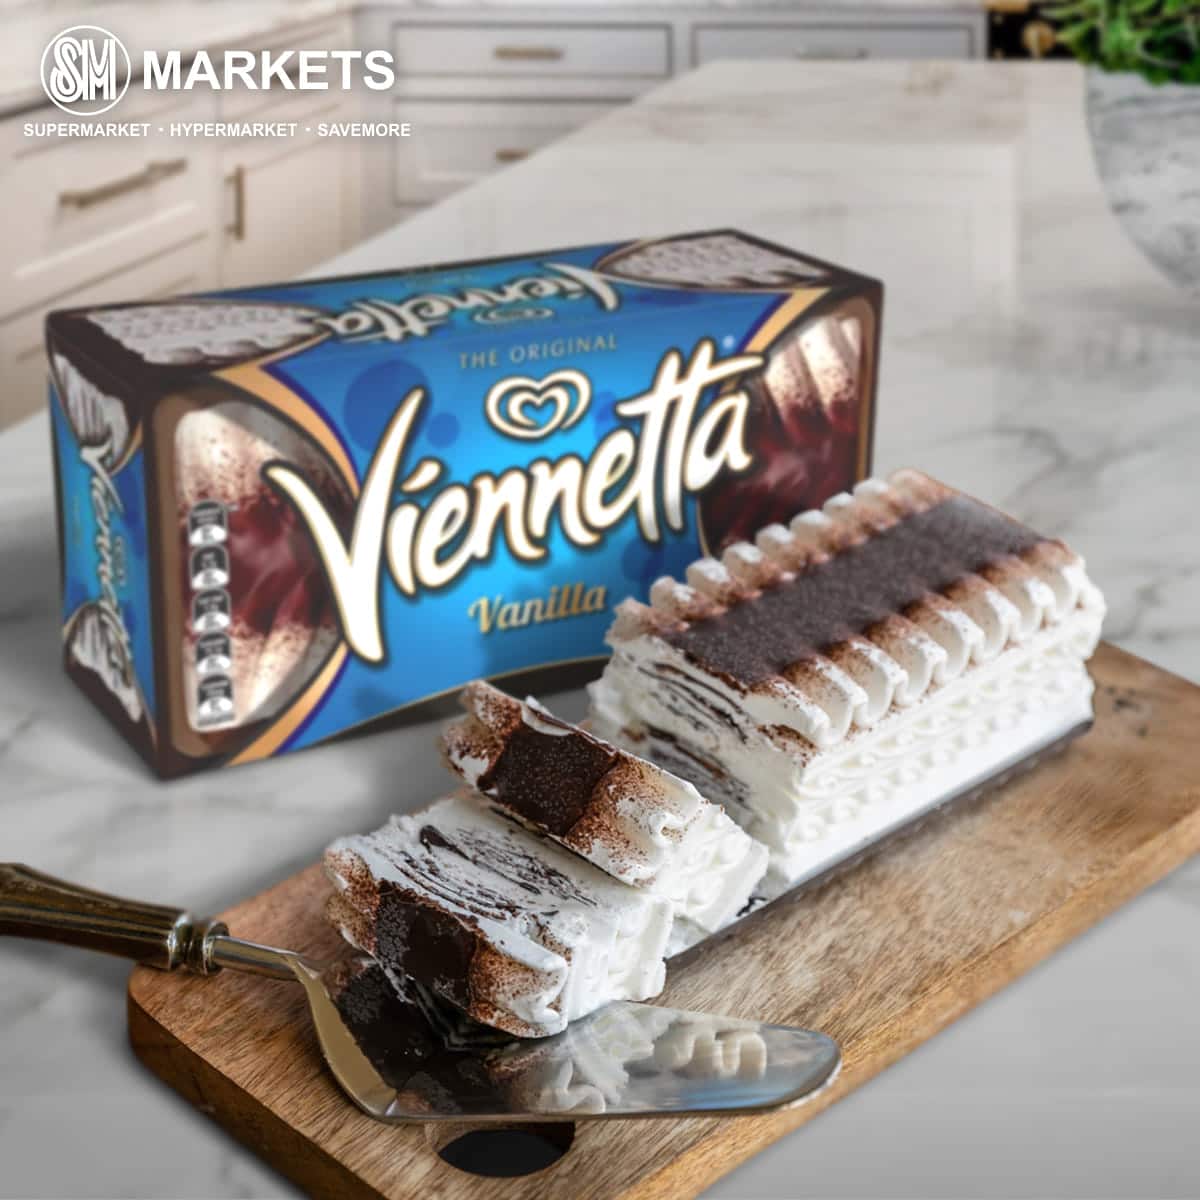 Selecta Viennetta Vanilla